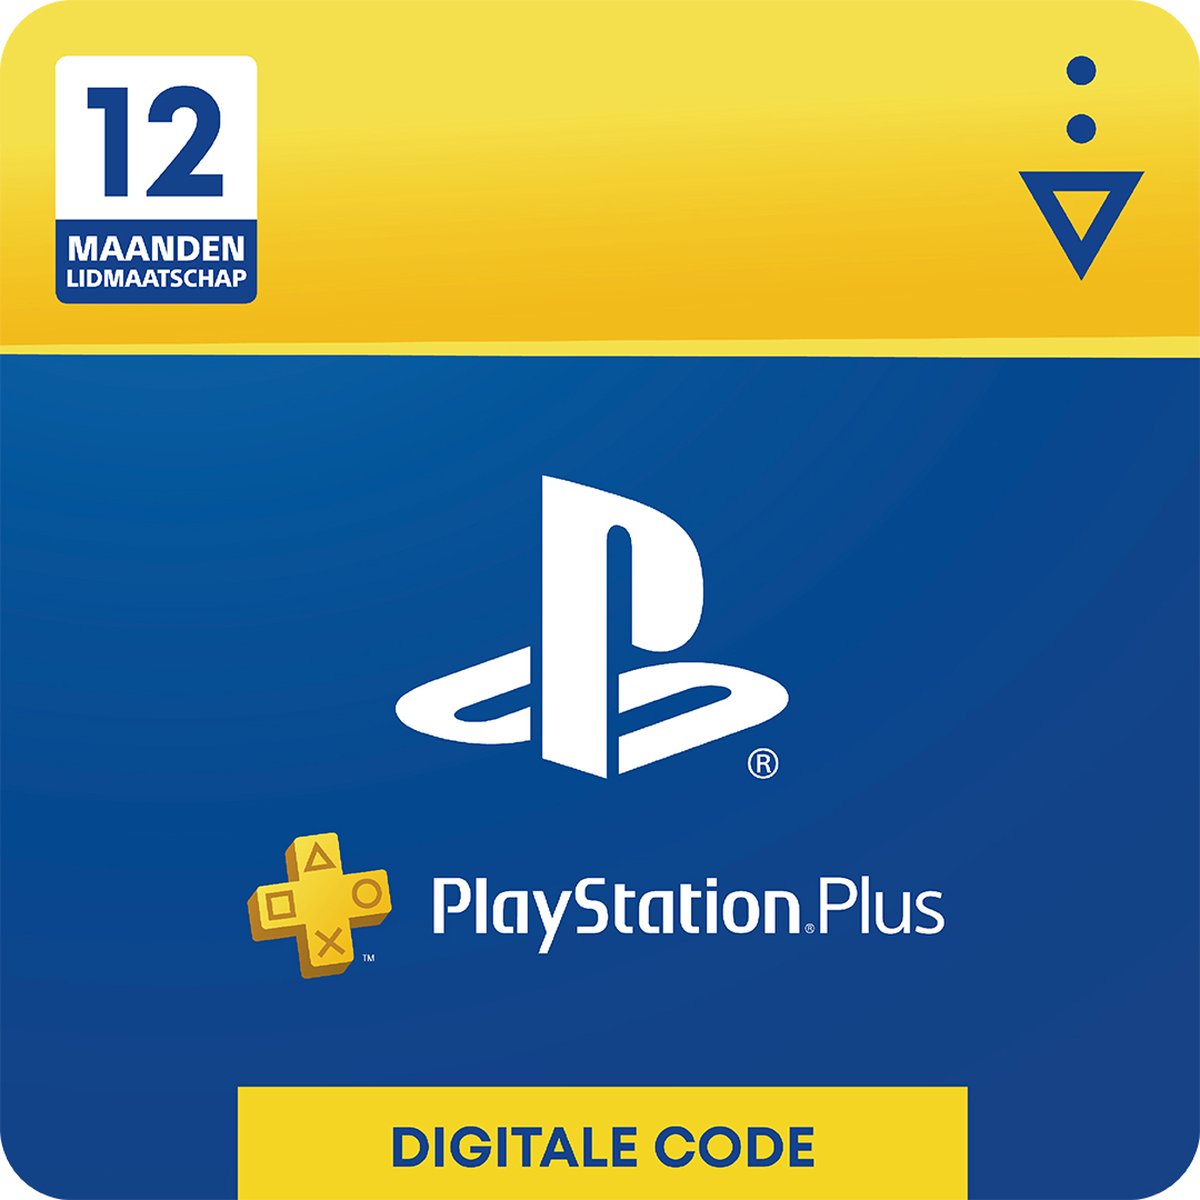 Sony Playstation Plus: 12 Maanden Lidmaatschap - NL - Sony digitaal